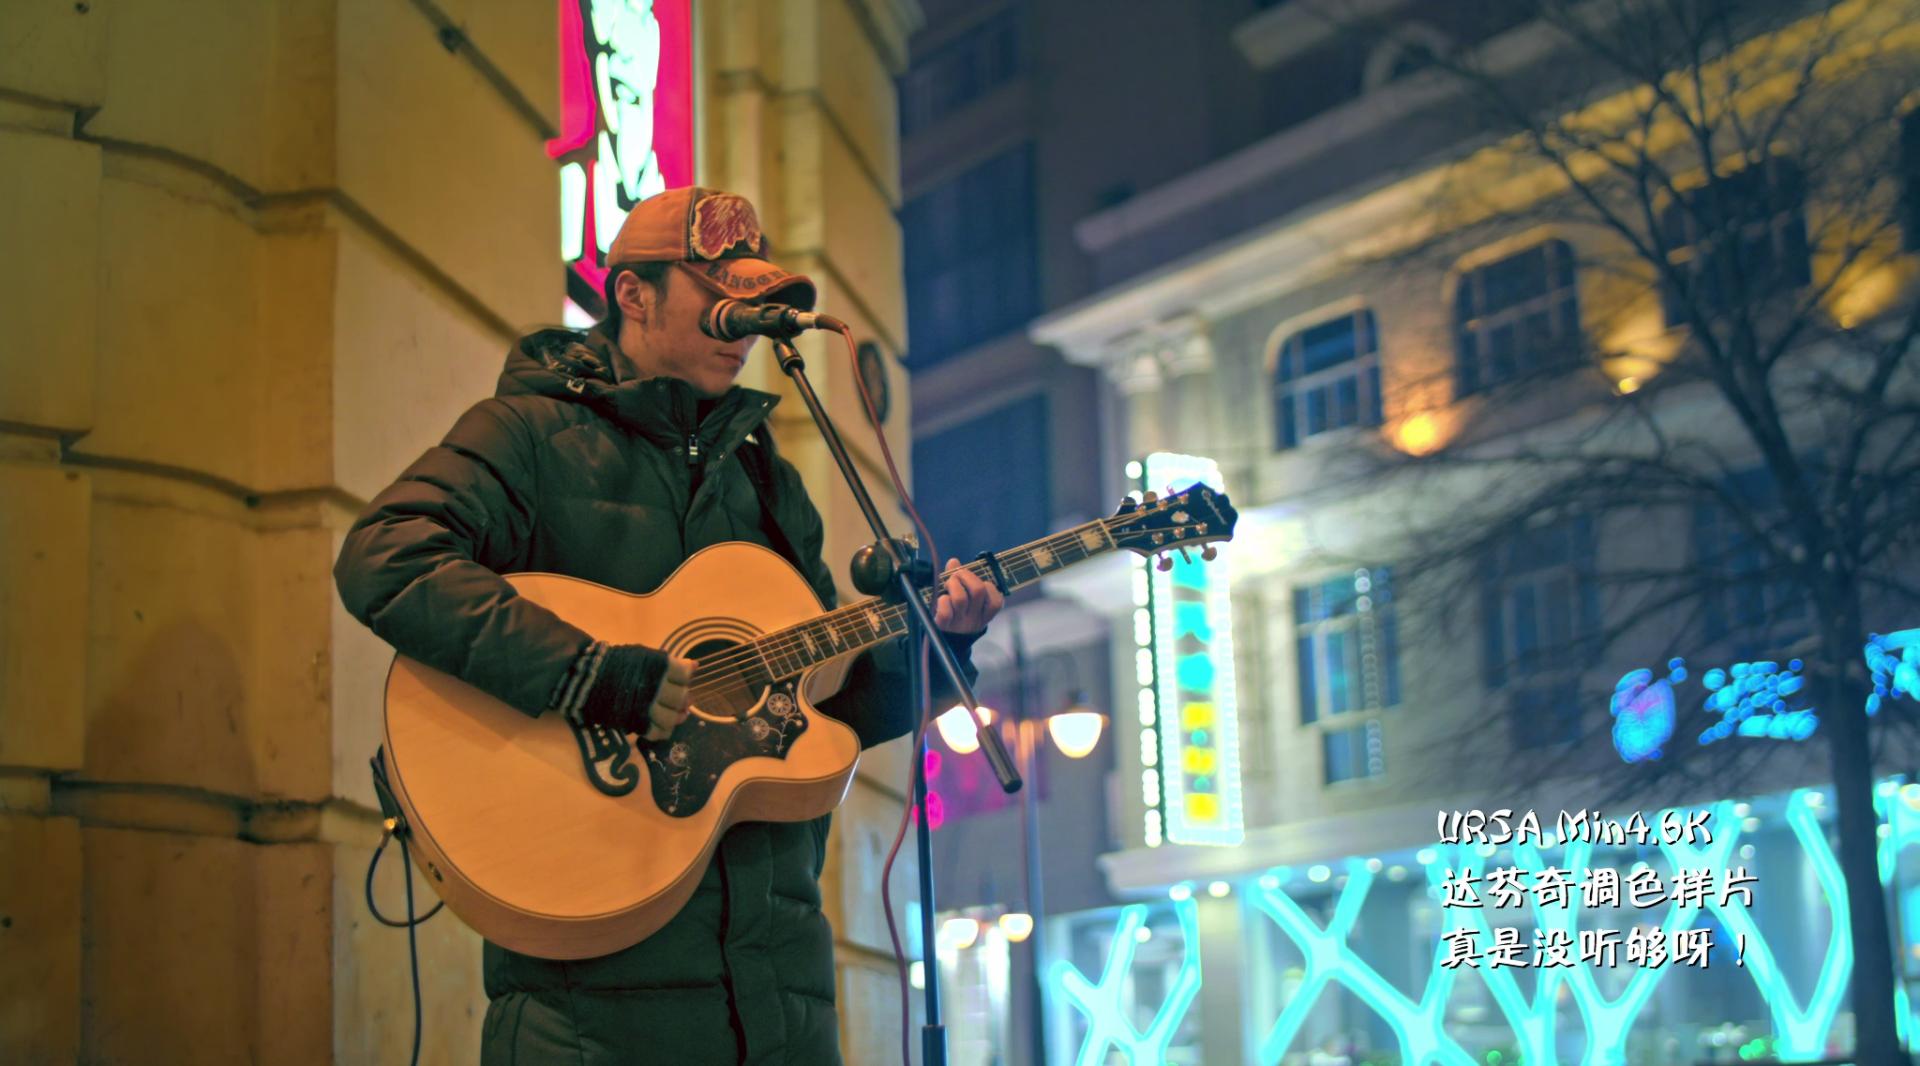 哈尔滨中央大街  街头歌手 没听够呀 只拍了一小段哎！